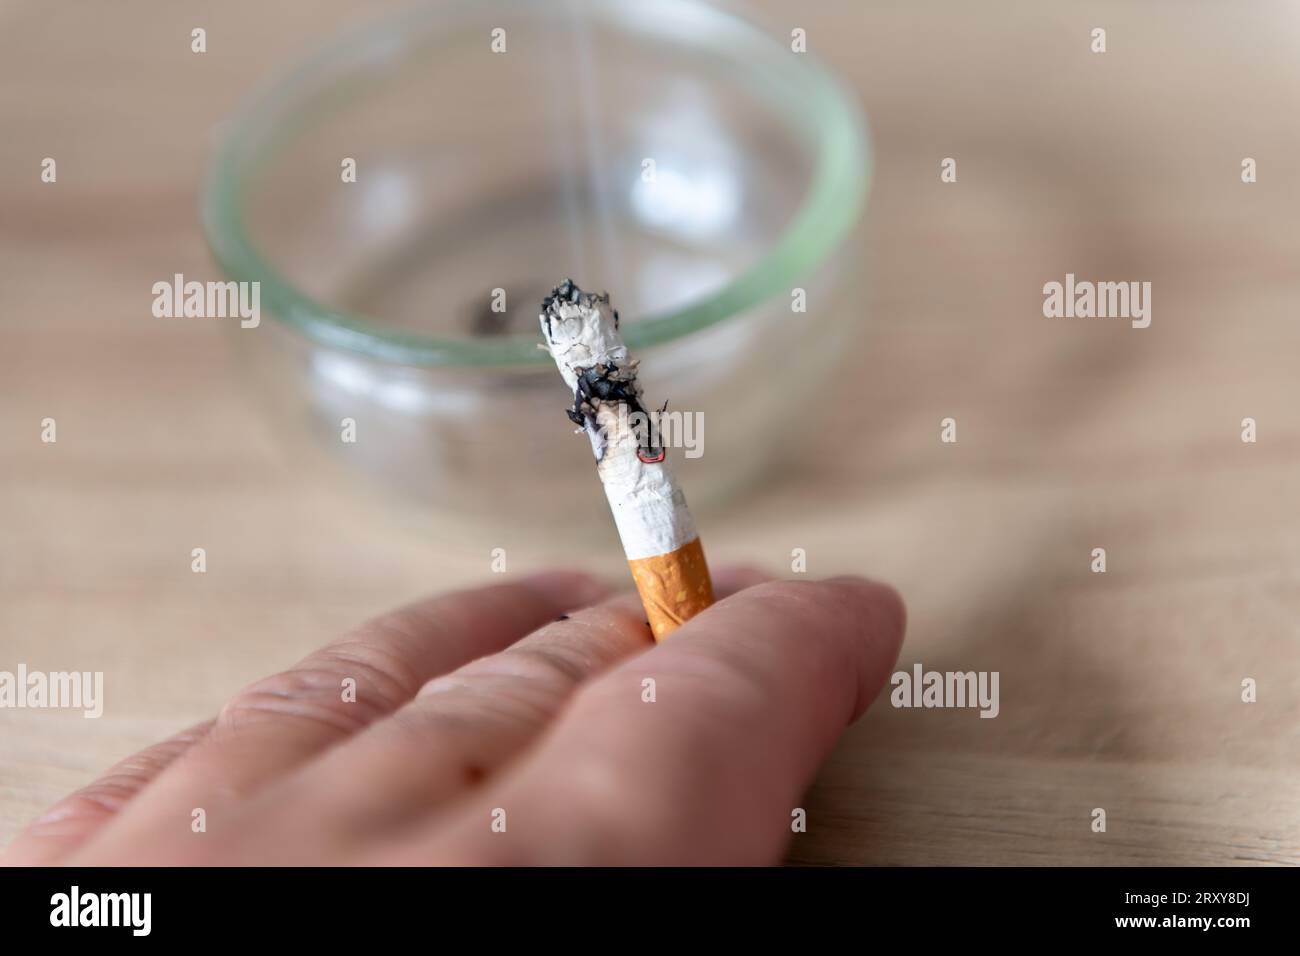 Un fumador sosteniendo un cigarrillo ardiente ahumado en la mano con un cenicero en el fondo. Foto de stock